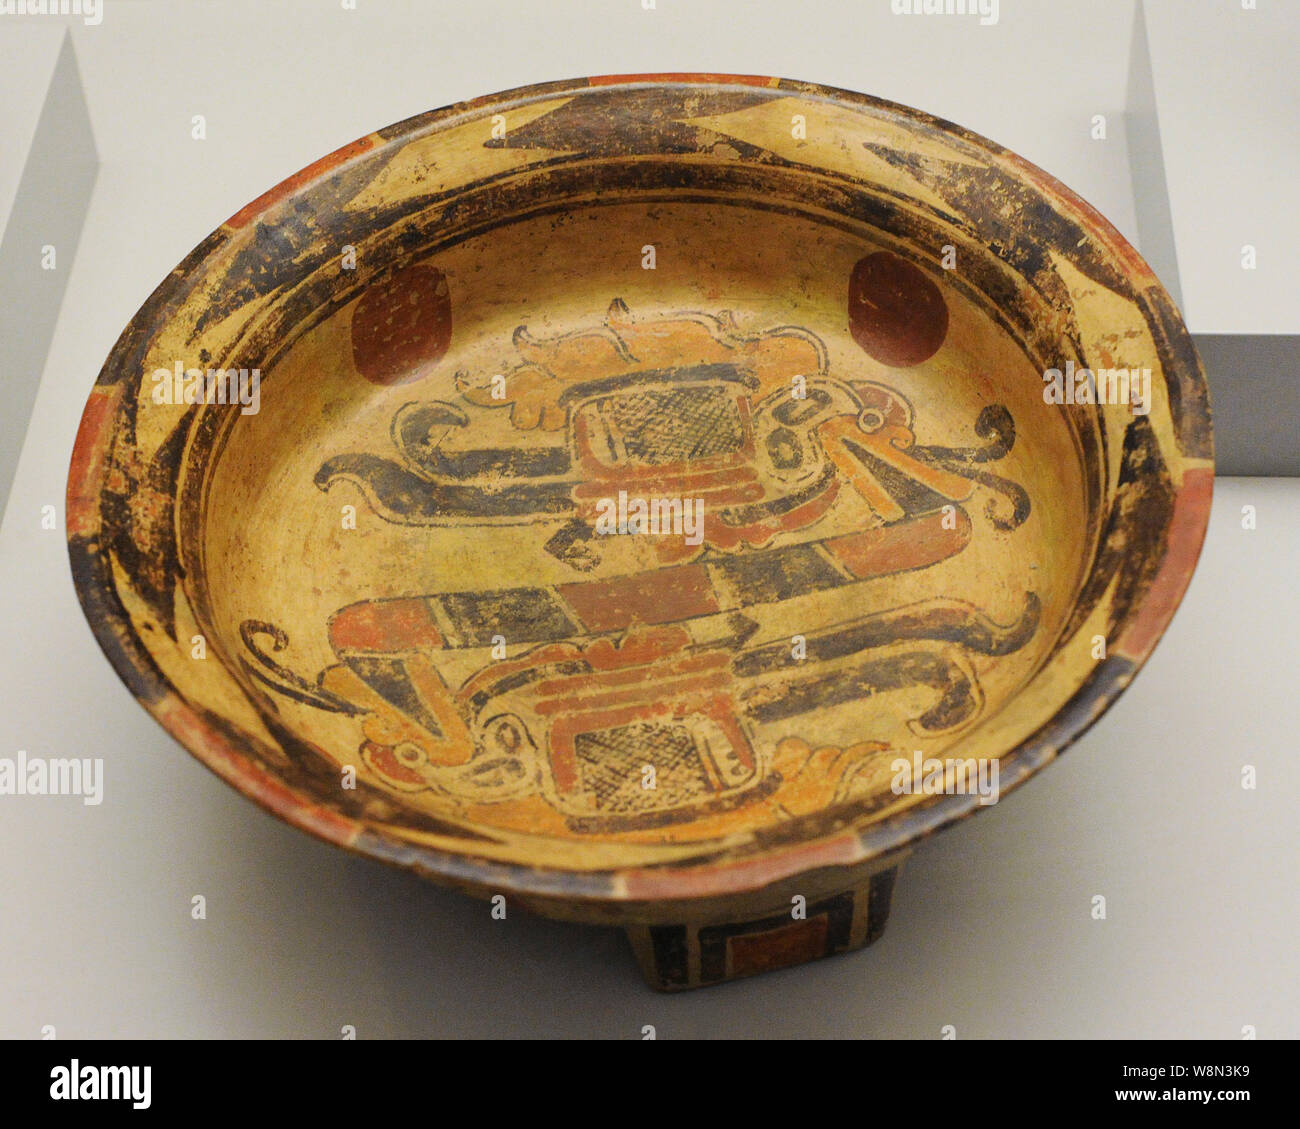 La plaque de tripode. Céramique peinte. Maya Salua. Période classique (600-900 AD). El Salvador. Musée de l'Amérique. Madrid, Espagne. Banque D'Images